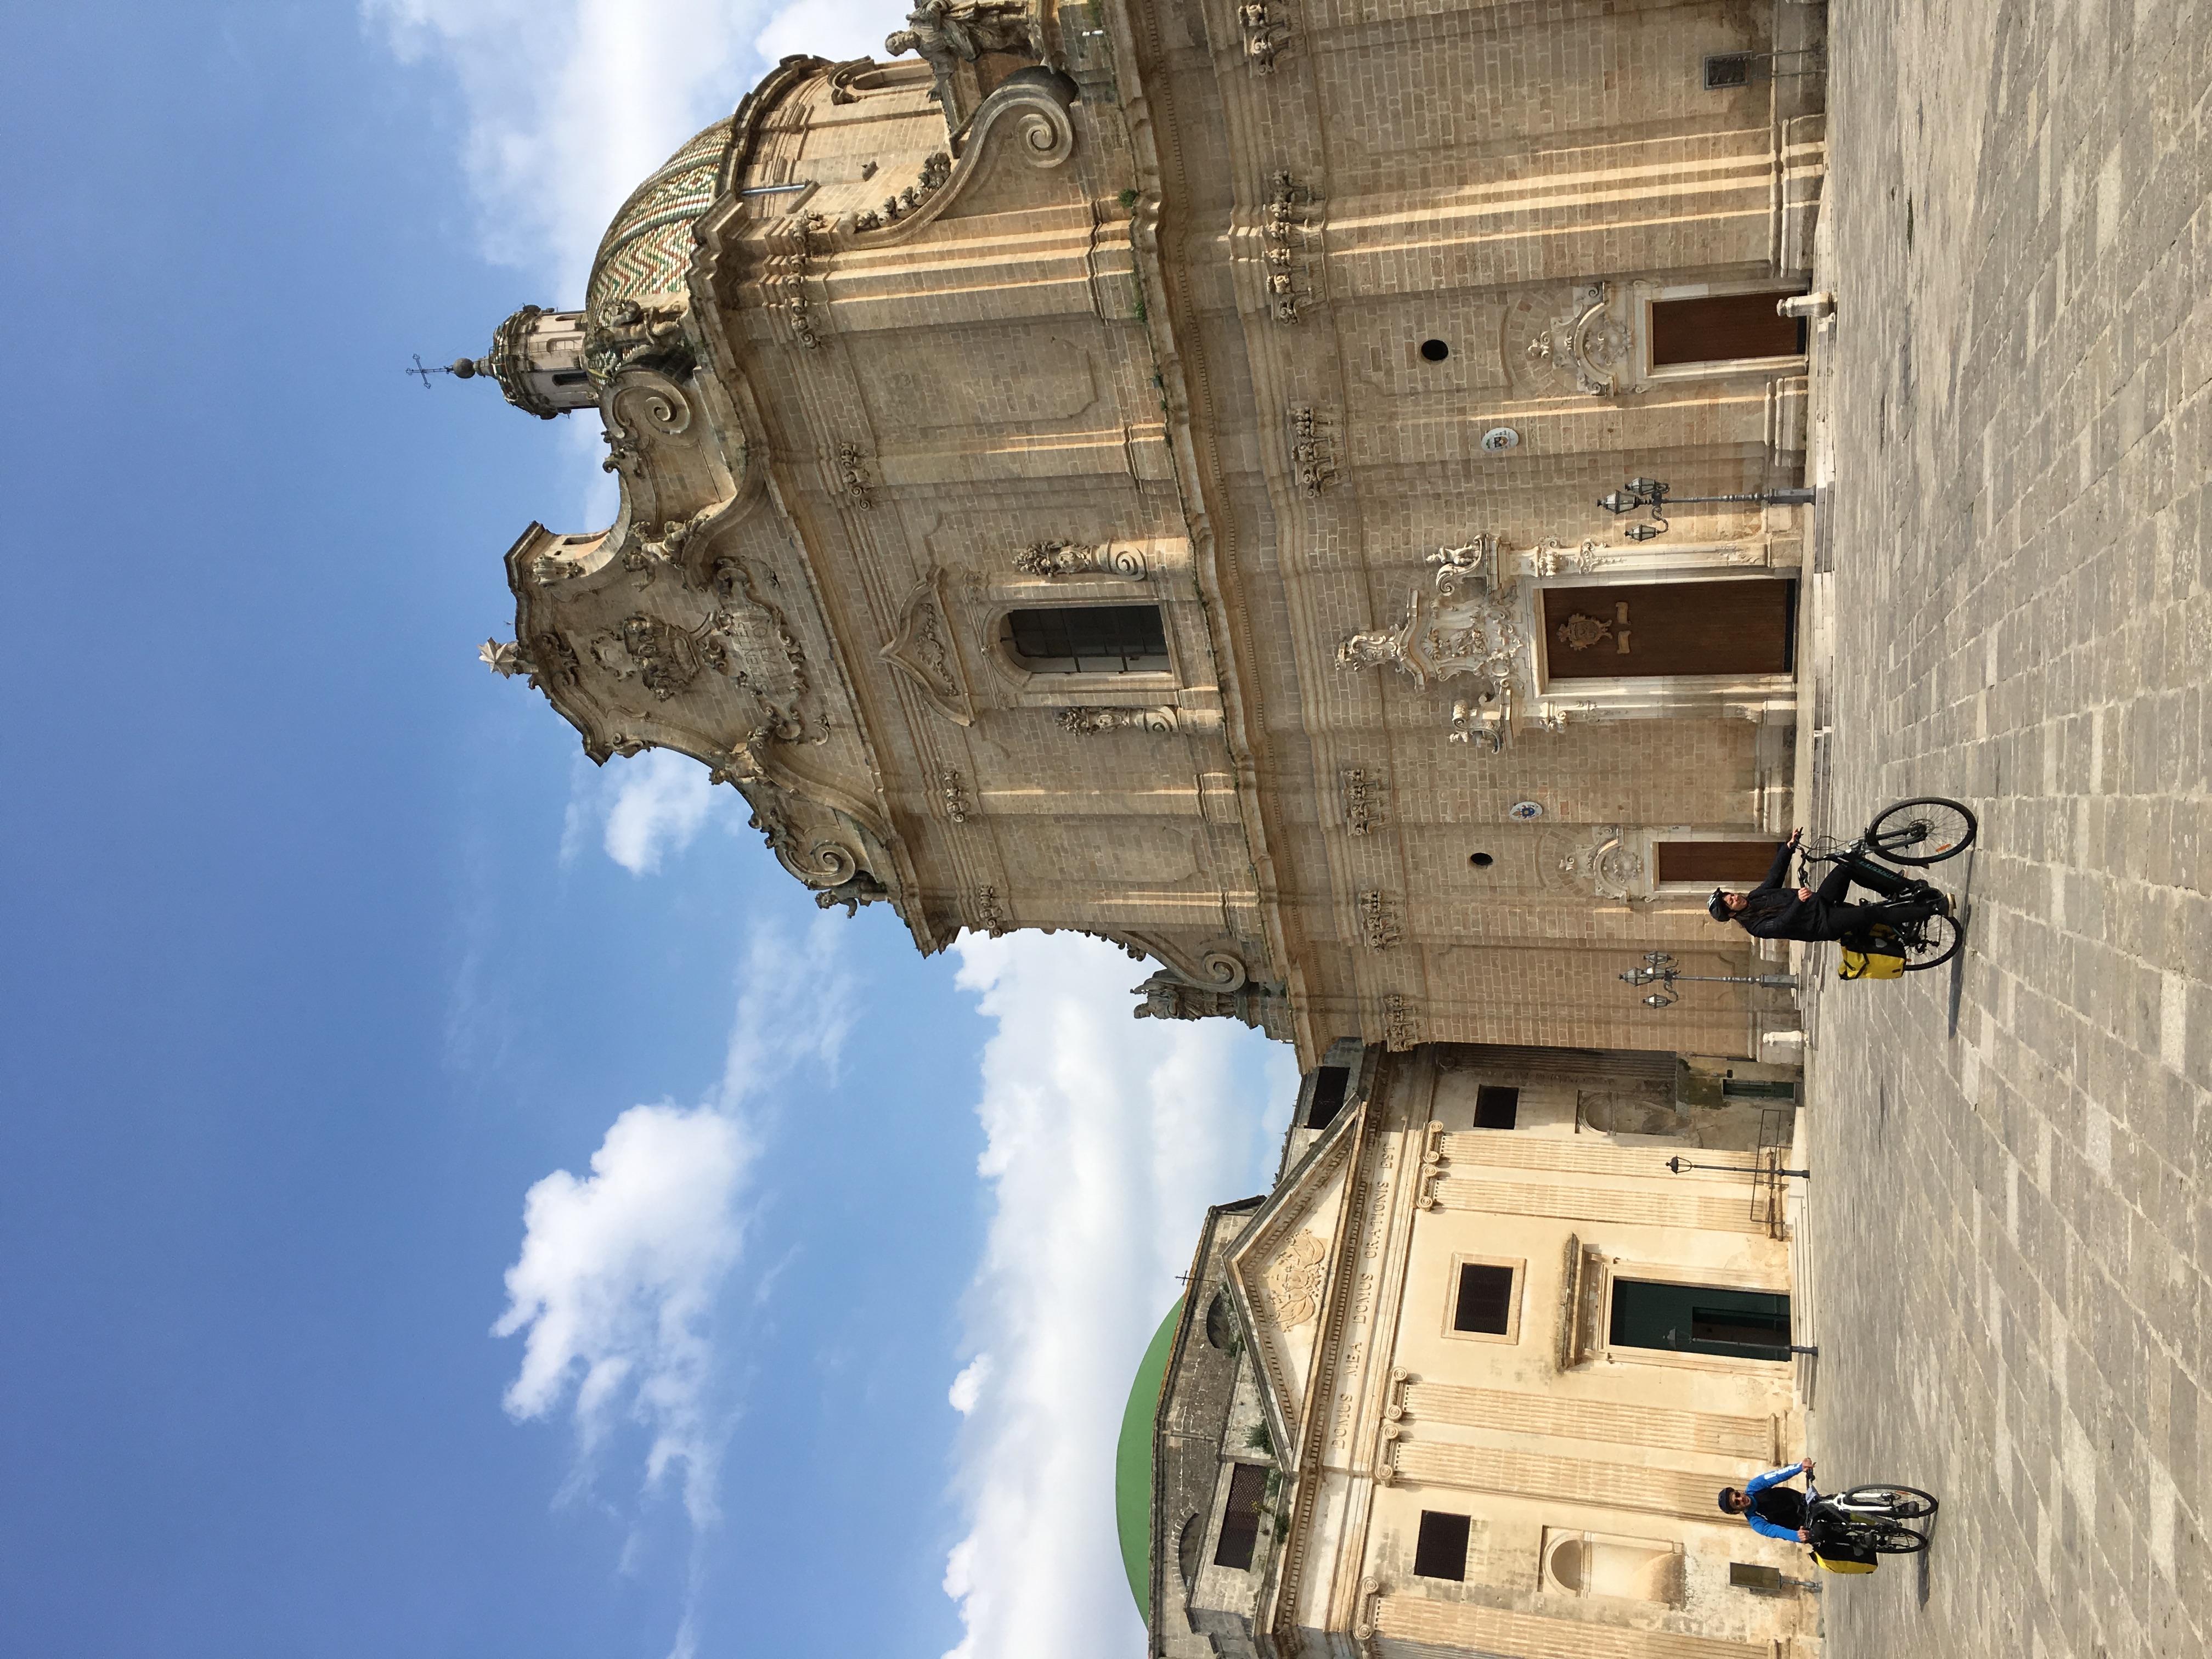 Apulian matkat - Italia pyöräilymatkat